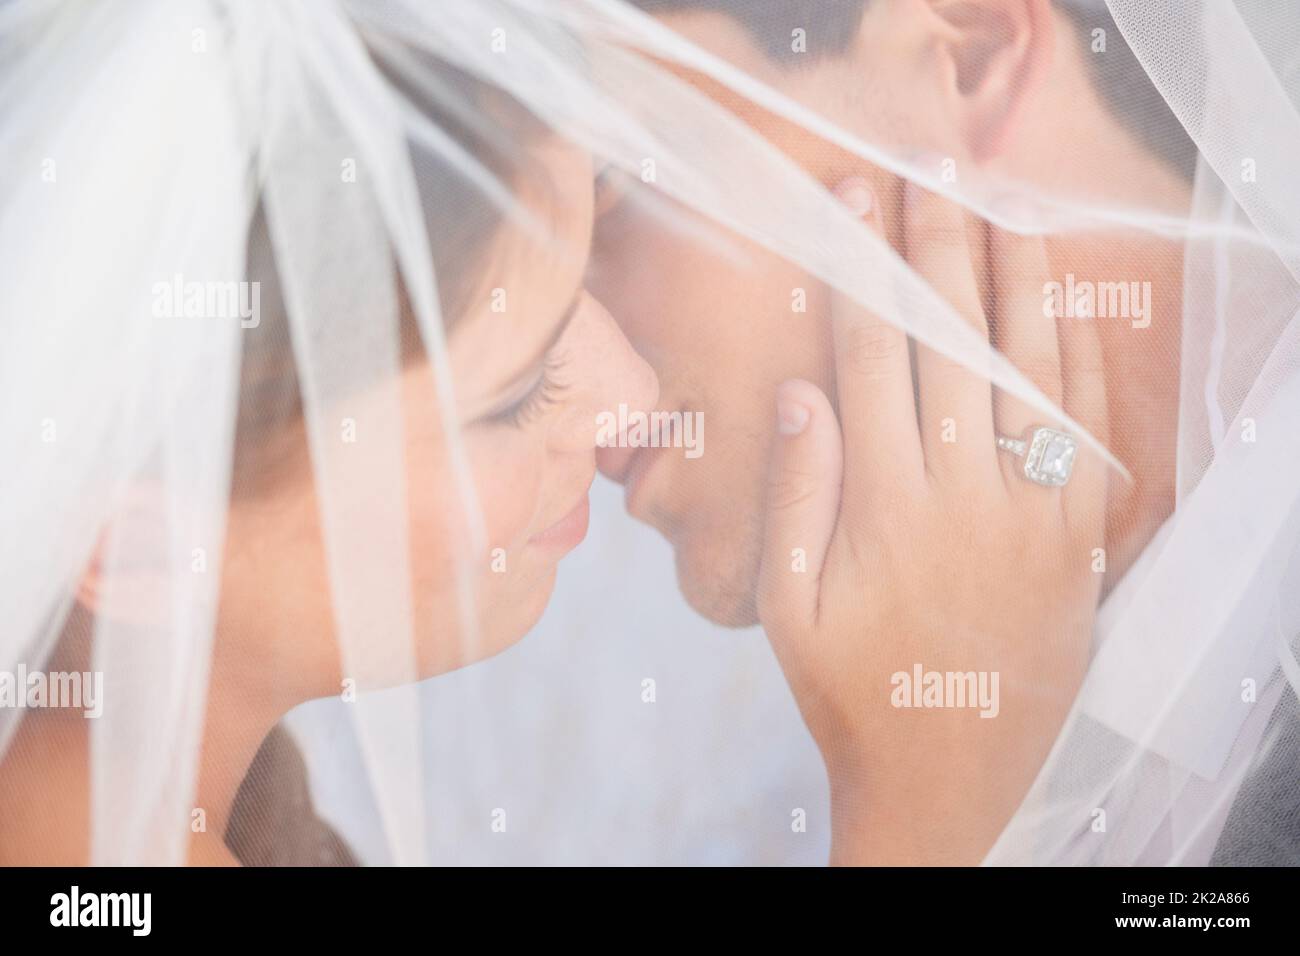 Bacio intimo. Immagine intima di una coppia appena sibilata dietro un velo. Foto Stock